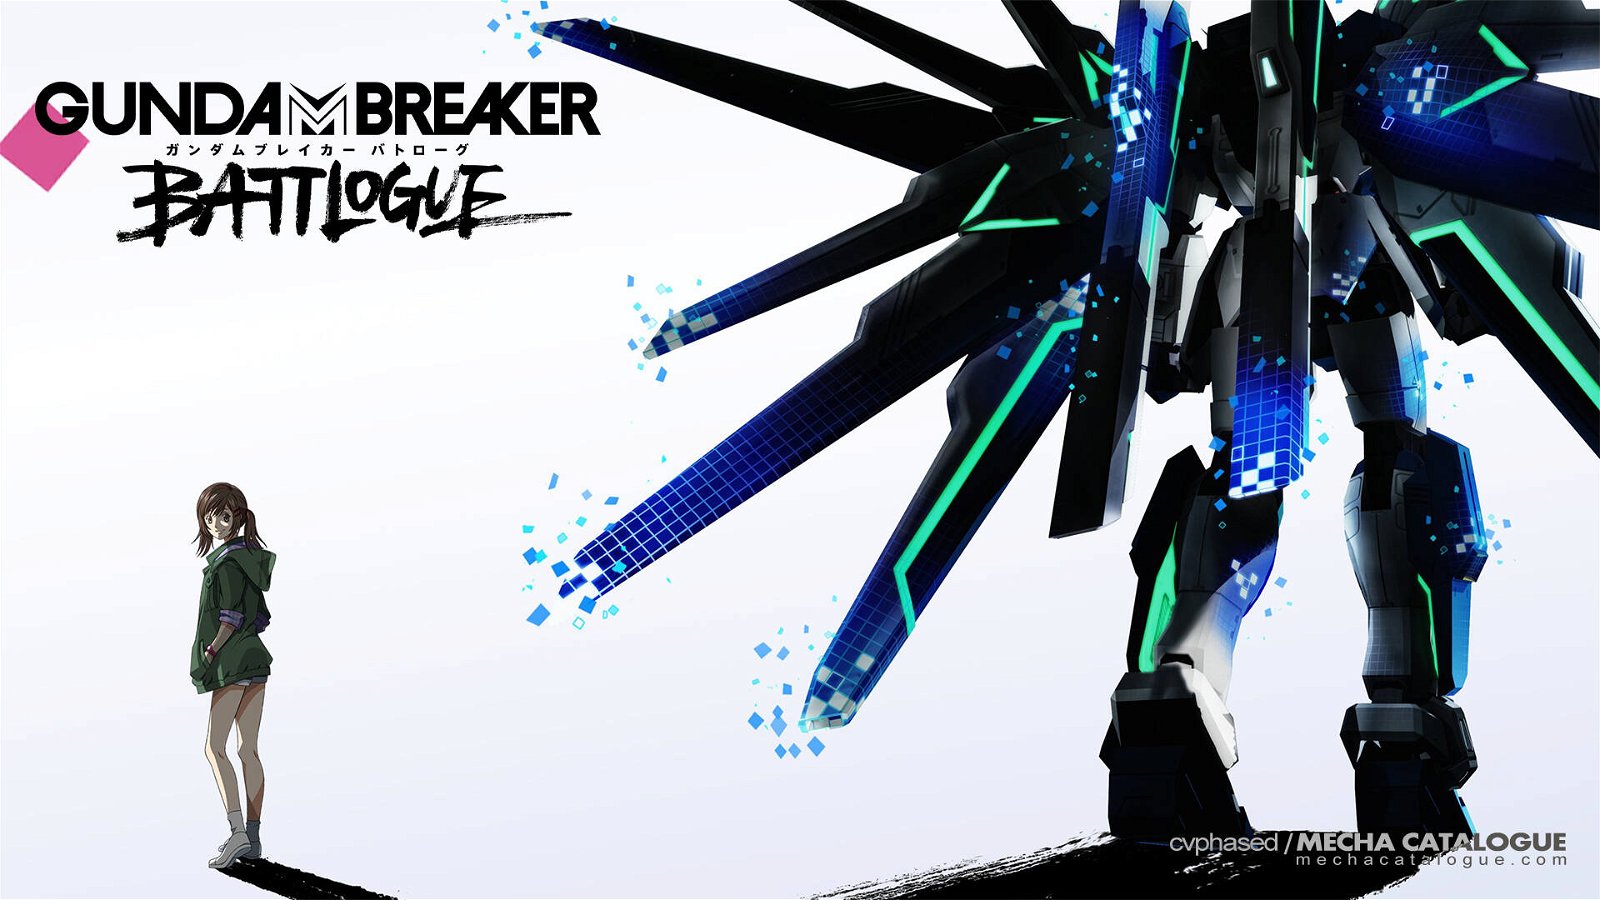 Immagine di Gundam Breaker Battlogue: teaser e data della première